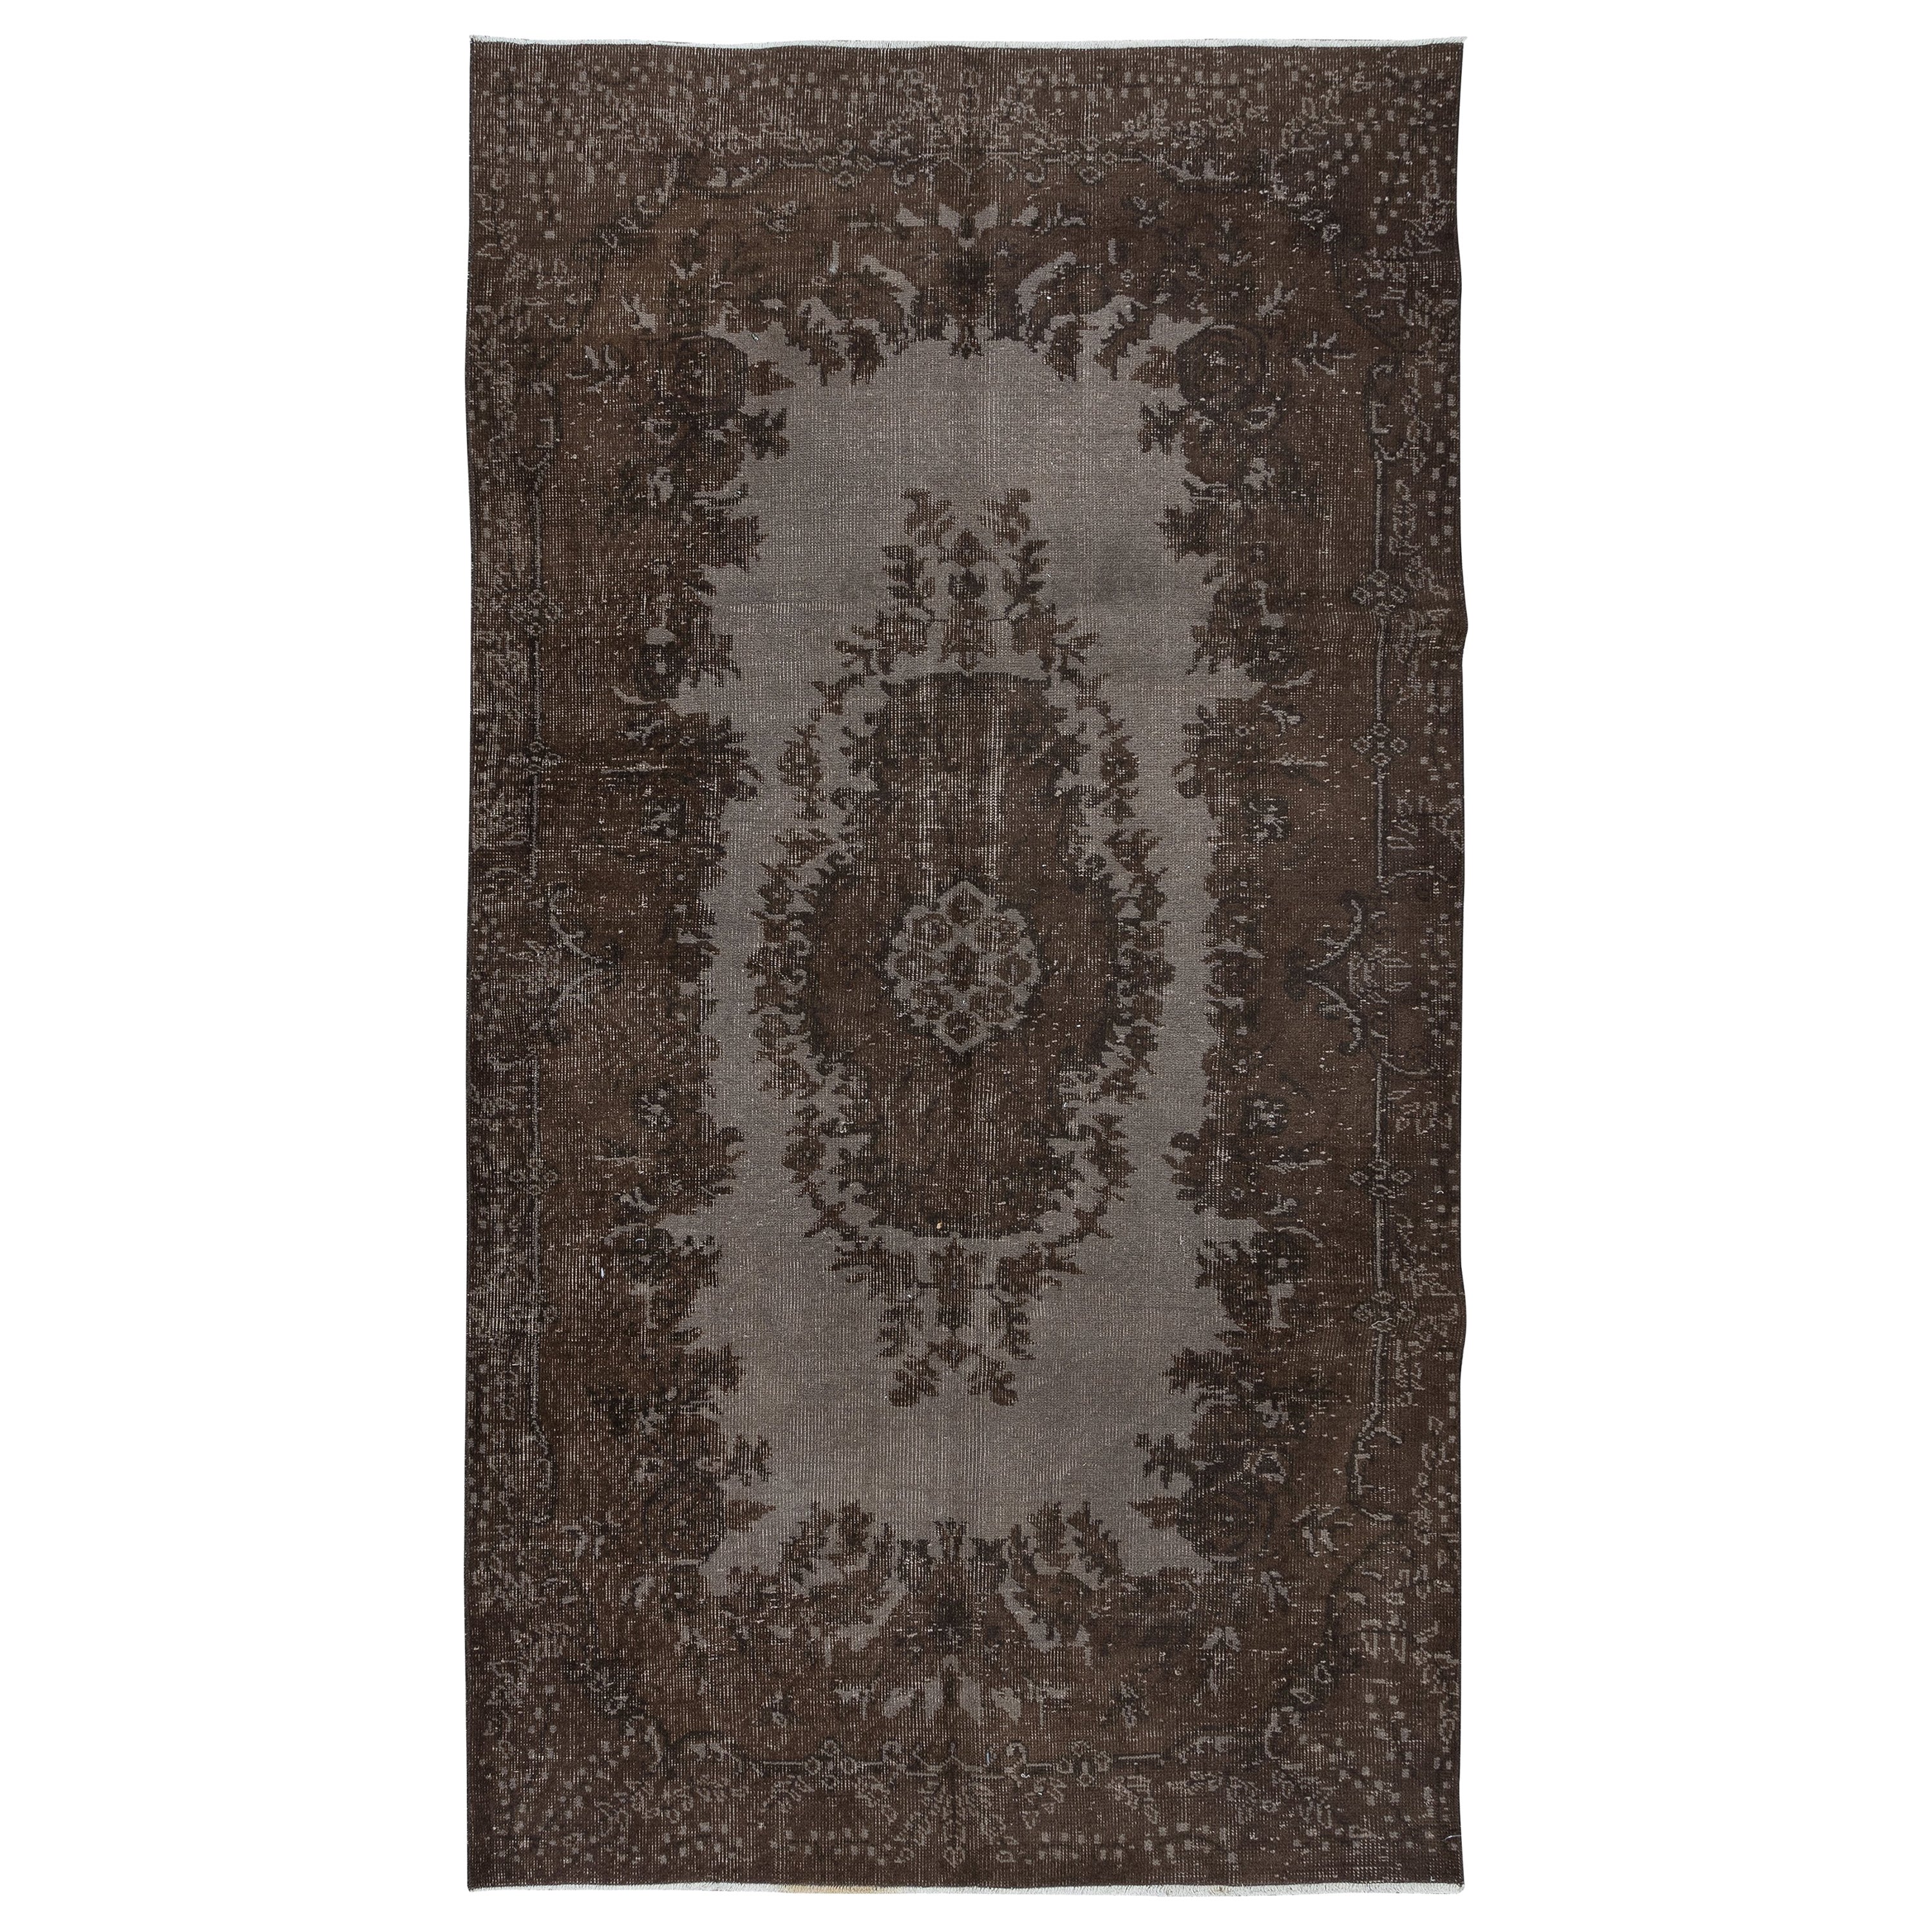 5x8.7 Ft Handgefertigter Türkischer Teppich in Brown, Modern Home Decor Teppich mit Medaillon